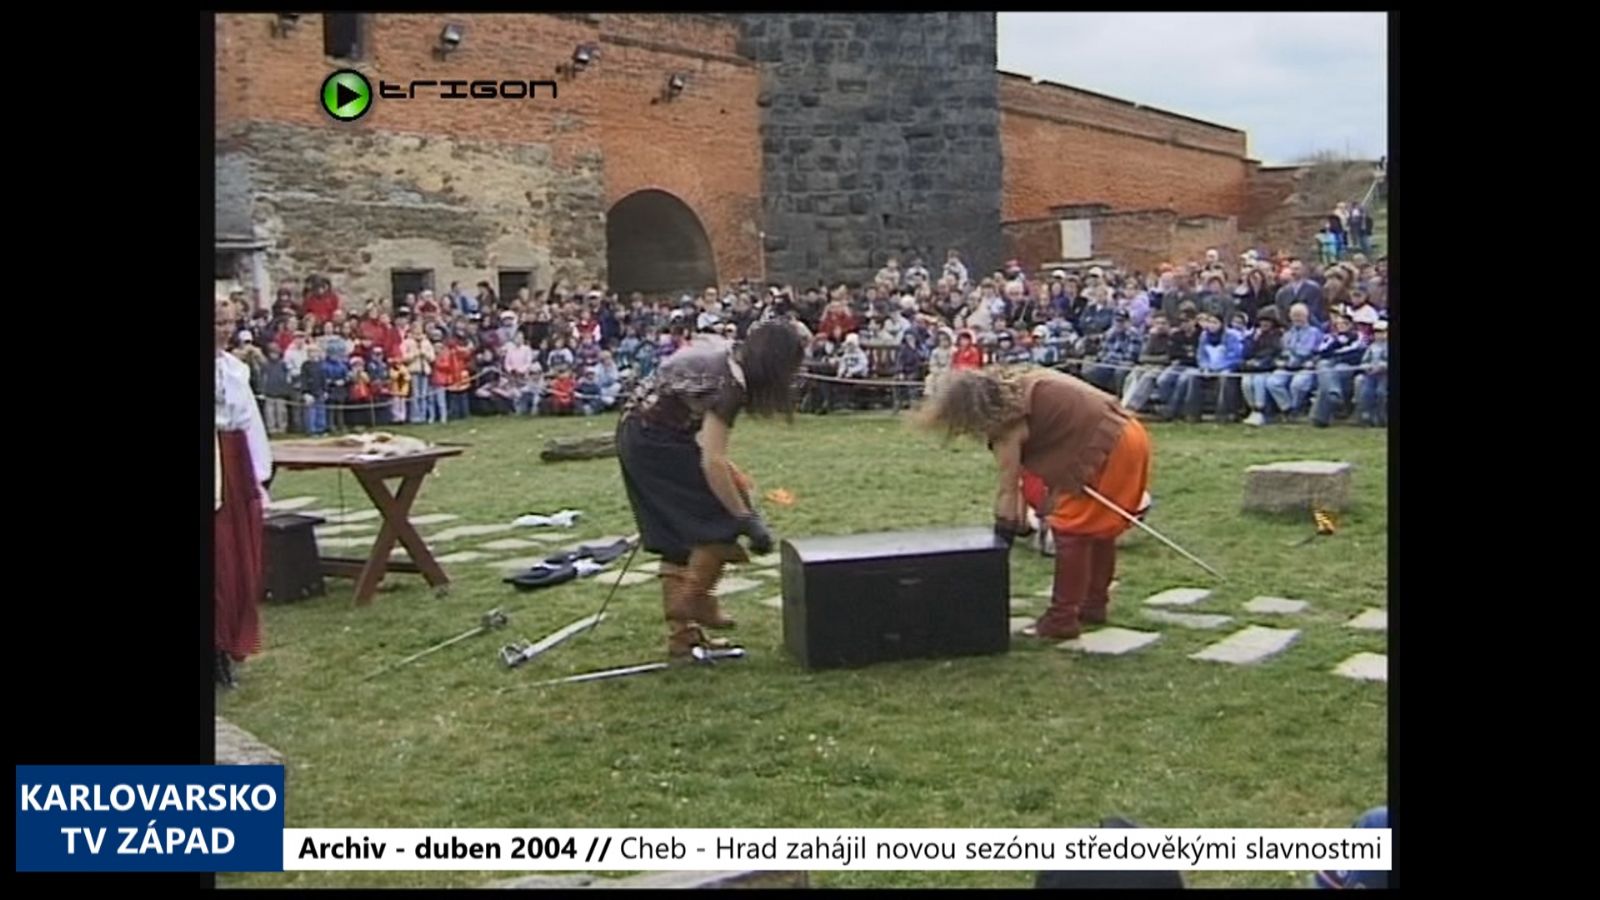 2004 – Cheb: Hrad zahájil sezónu středověkými slavnostmi (TV Západ)